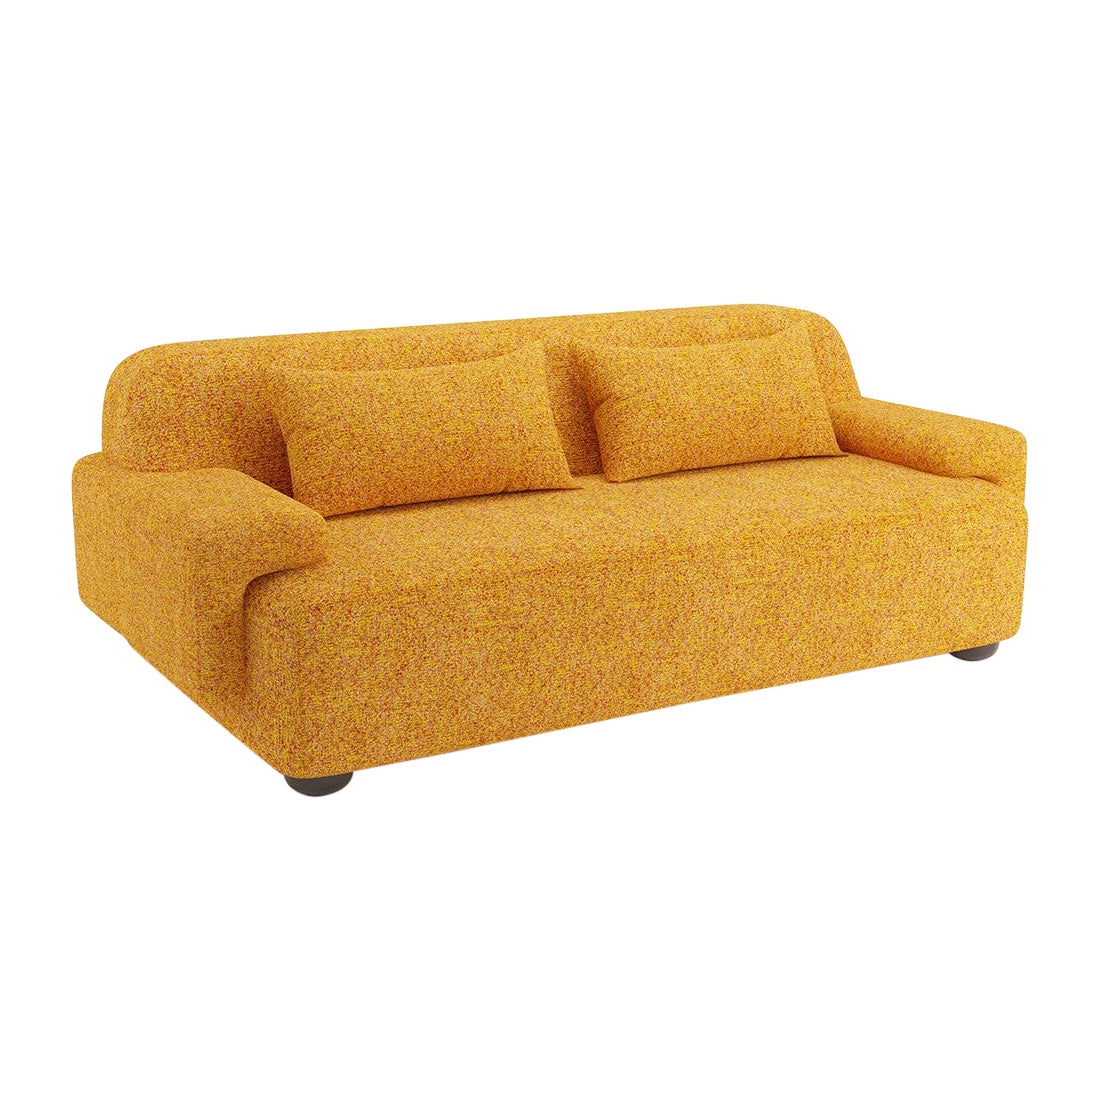 Popus Editions Lena 2.5 Seater Sofa in Saffron Zanzi Linen & Wool Blend Fabric For Sale